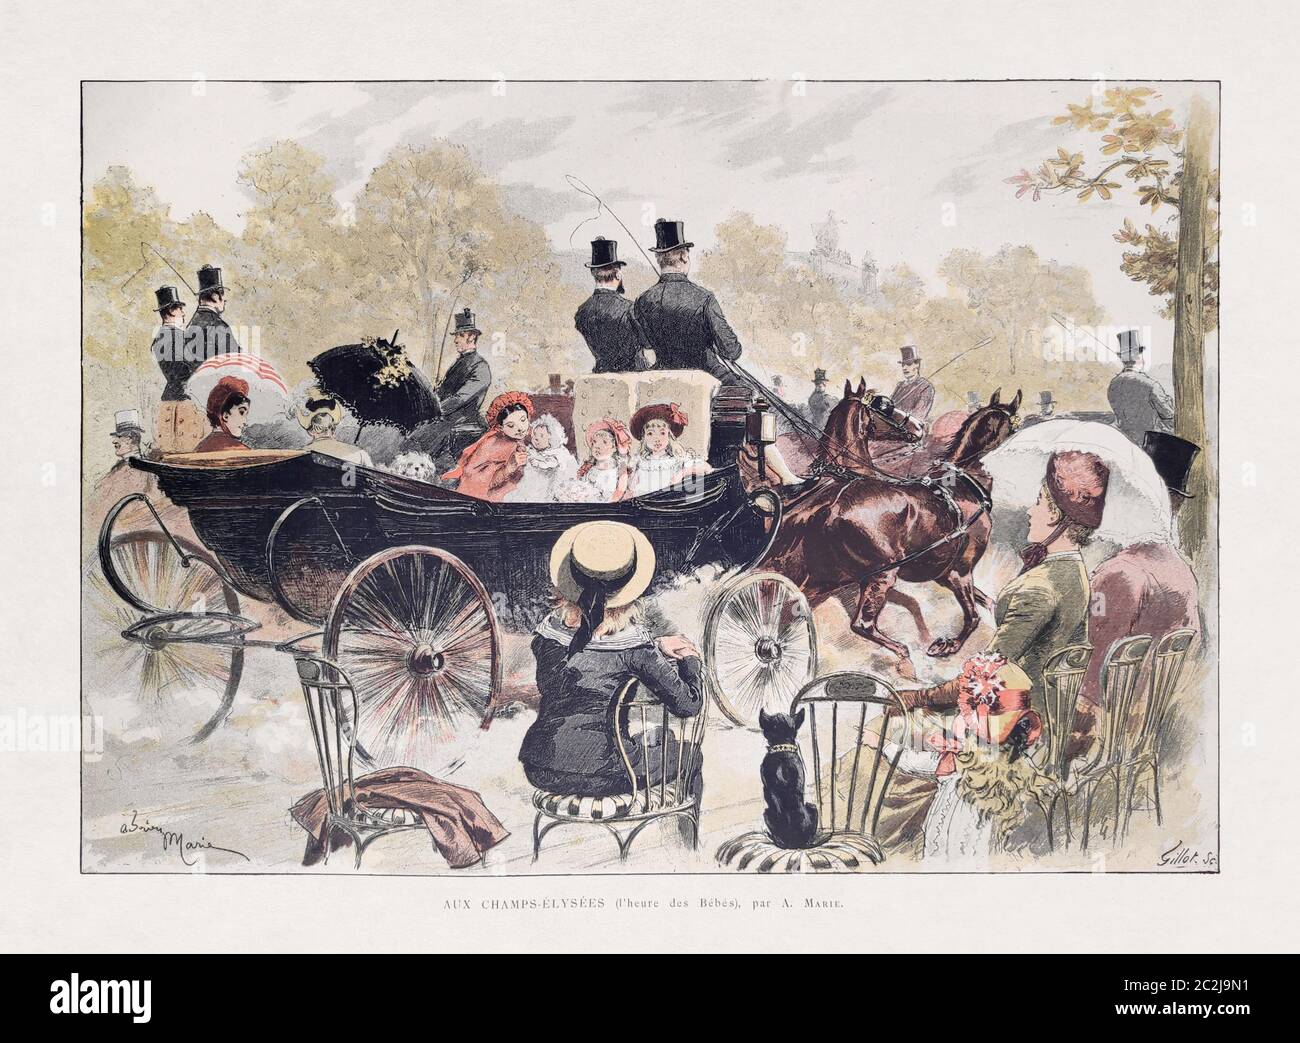 Ilustración de la familia parisina paseando en un carruaje tirado por caballos en los Campos Elíseos por A. Marie y grabado por Gillot publicado en 1885 en el mon Foto de stock